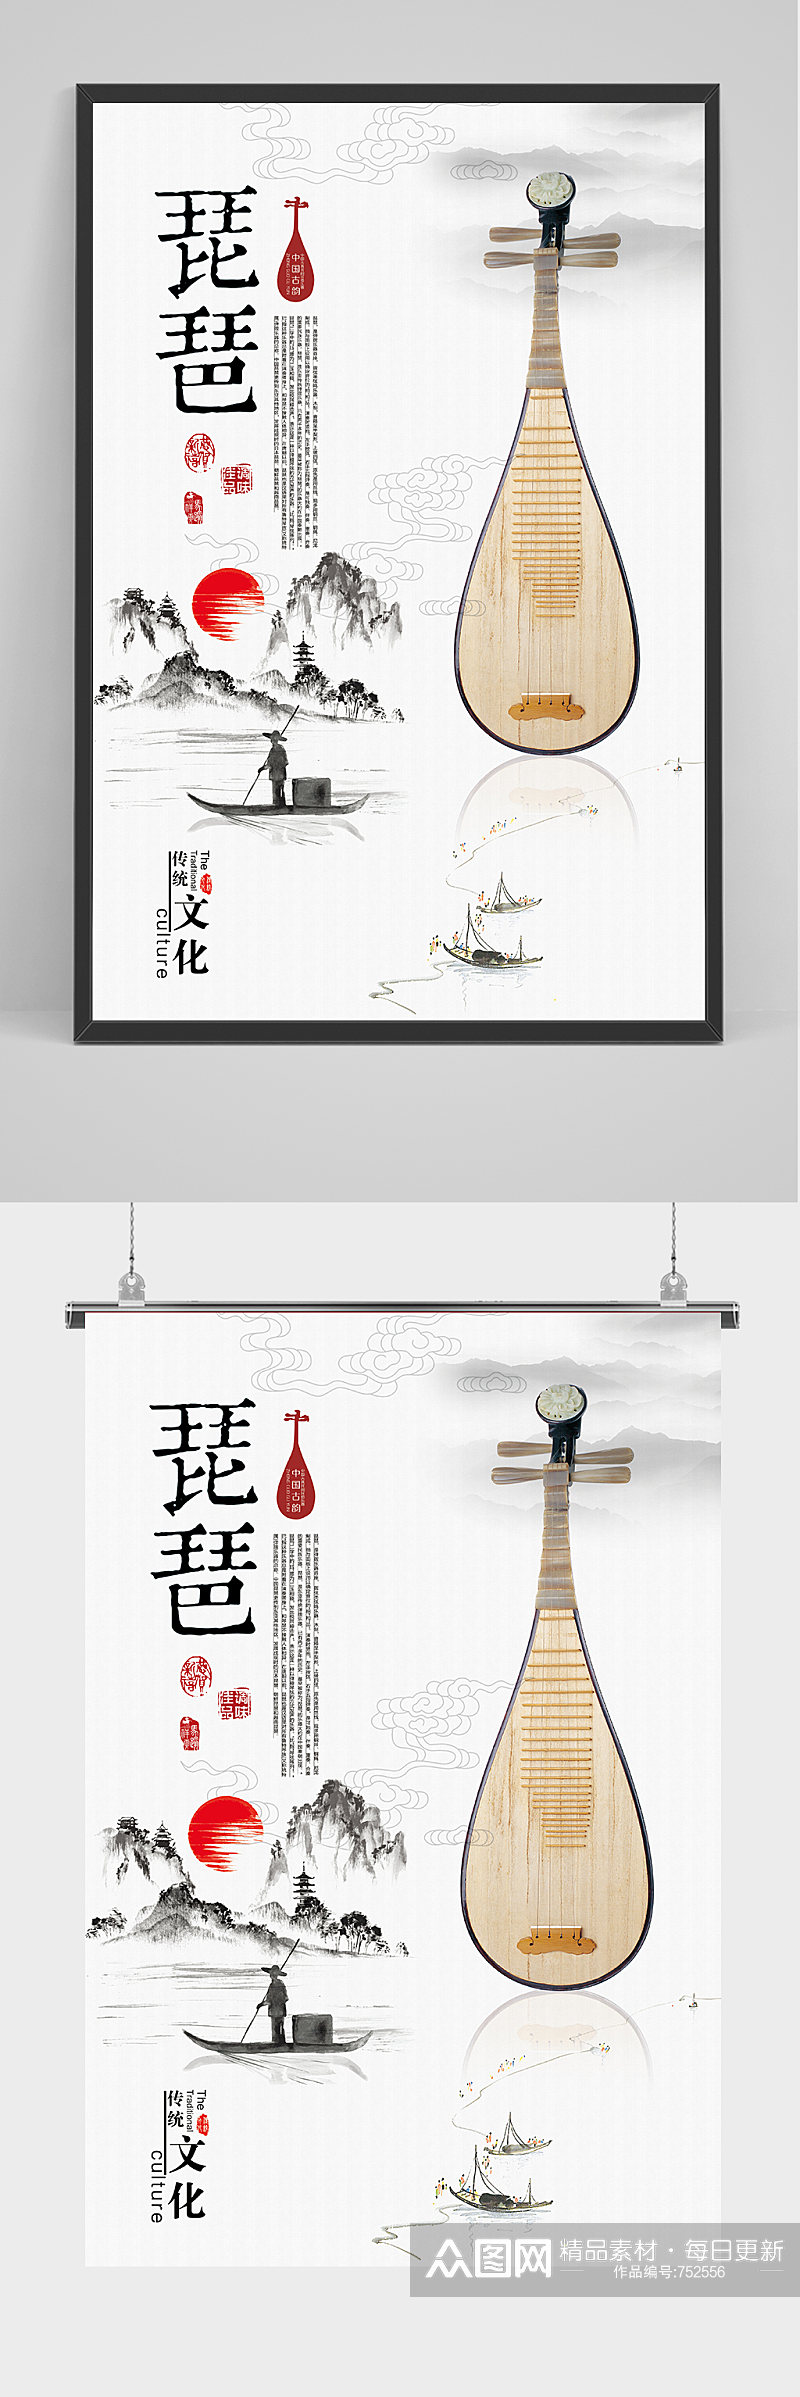 简约中国风琵琶乐器海报素材